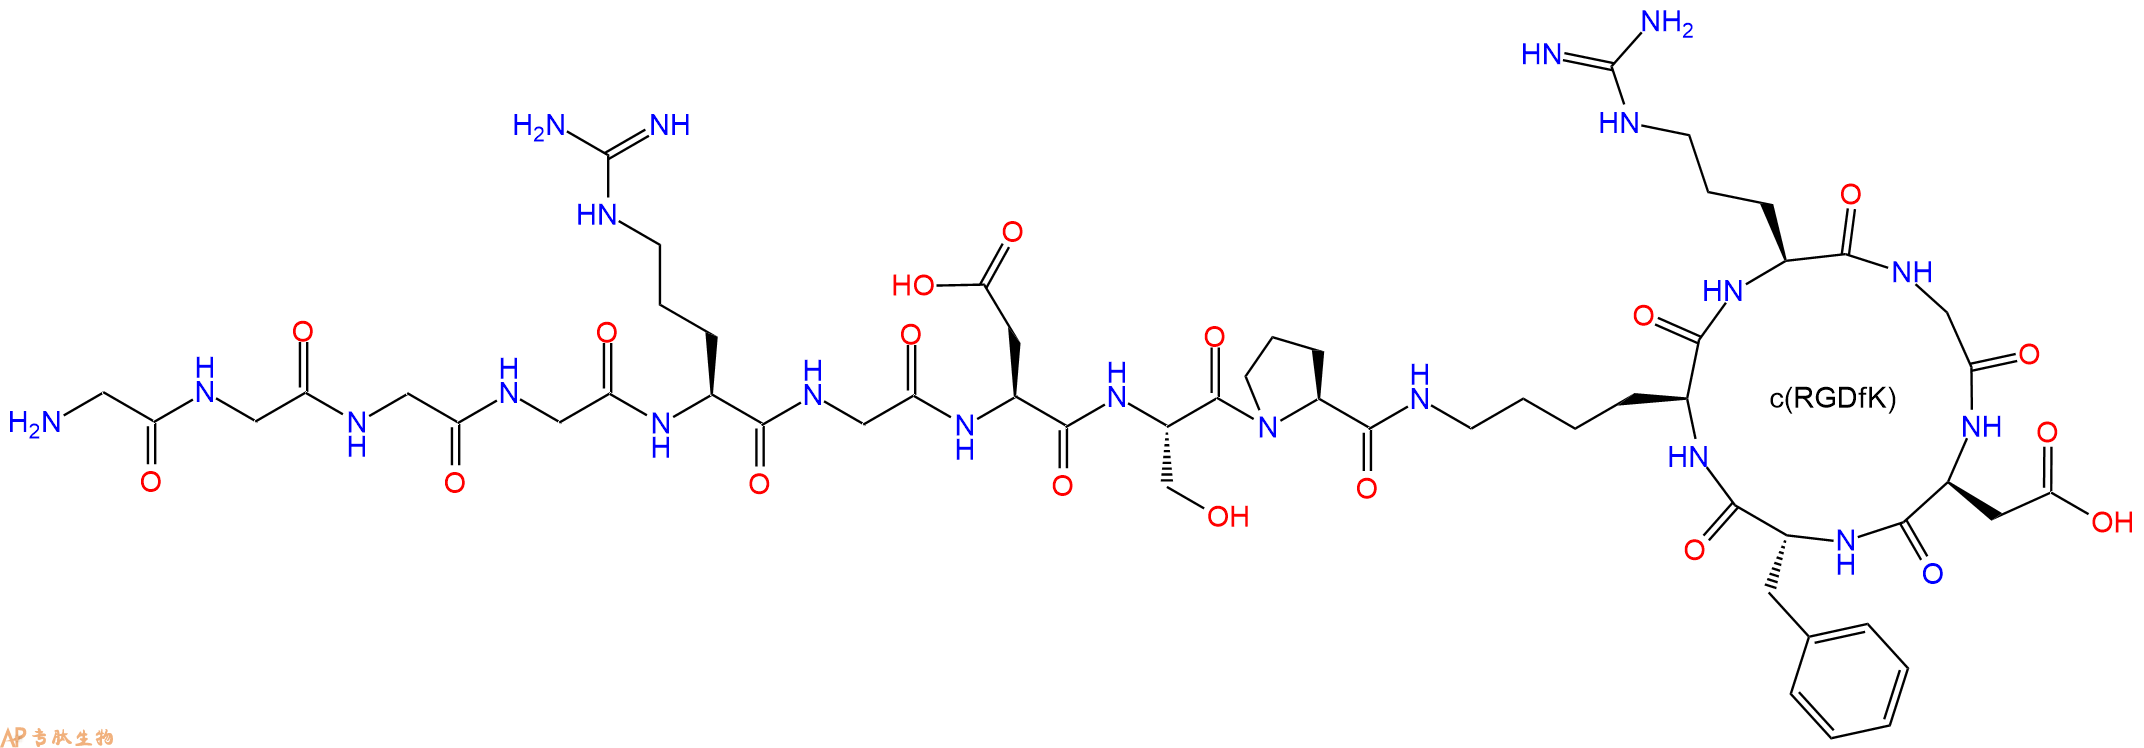 专肽生物产品GGGGRGDSP-c(RGDfK)